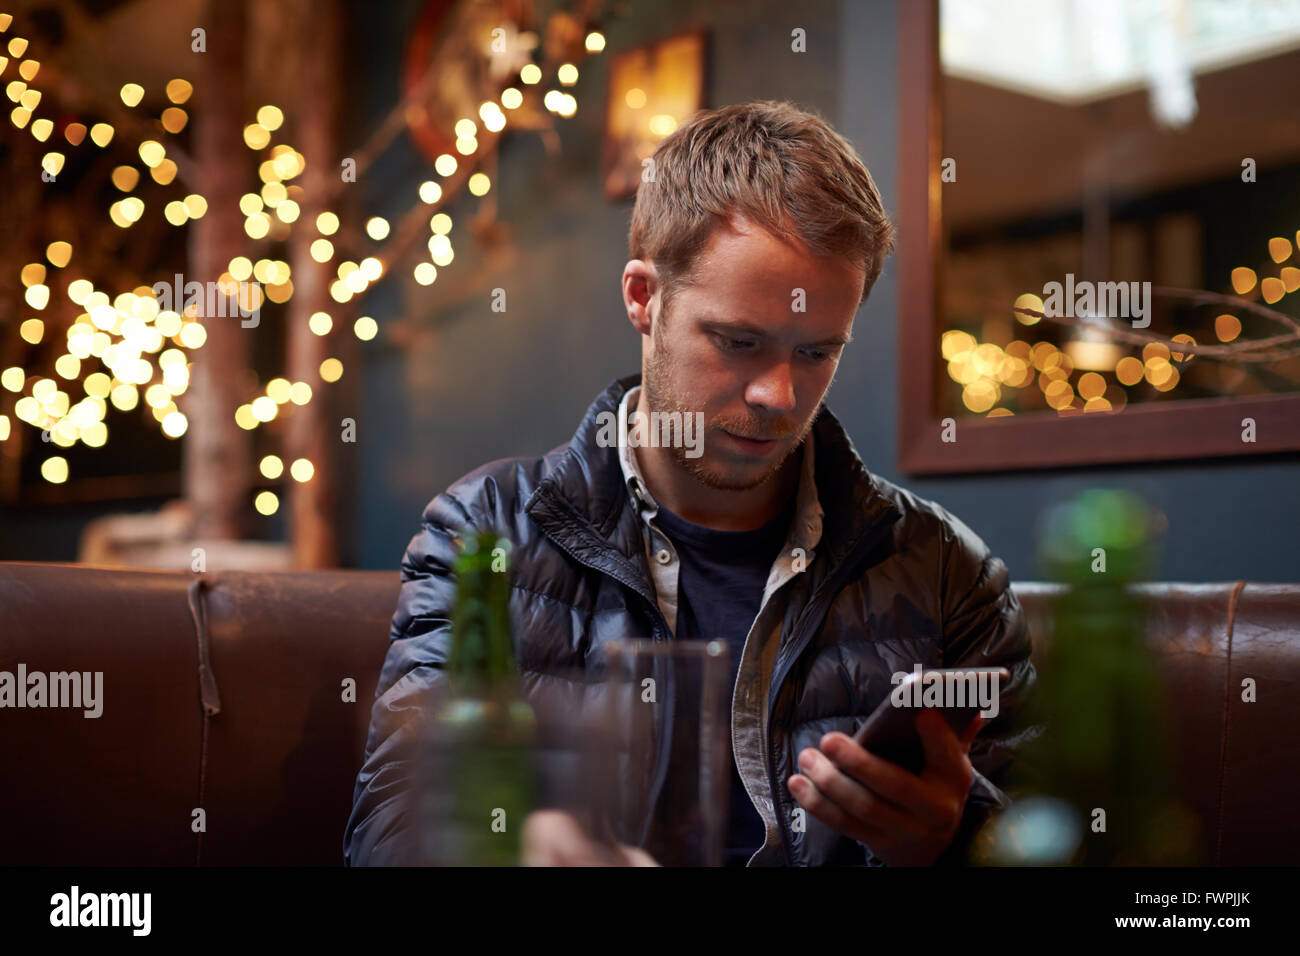 Hombre sentado dentro de Cafe Enviar mensaje de texto Foto de stock